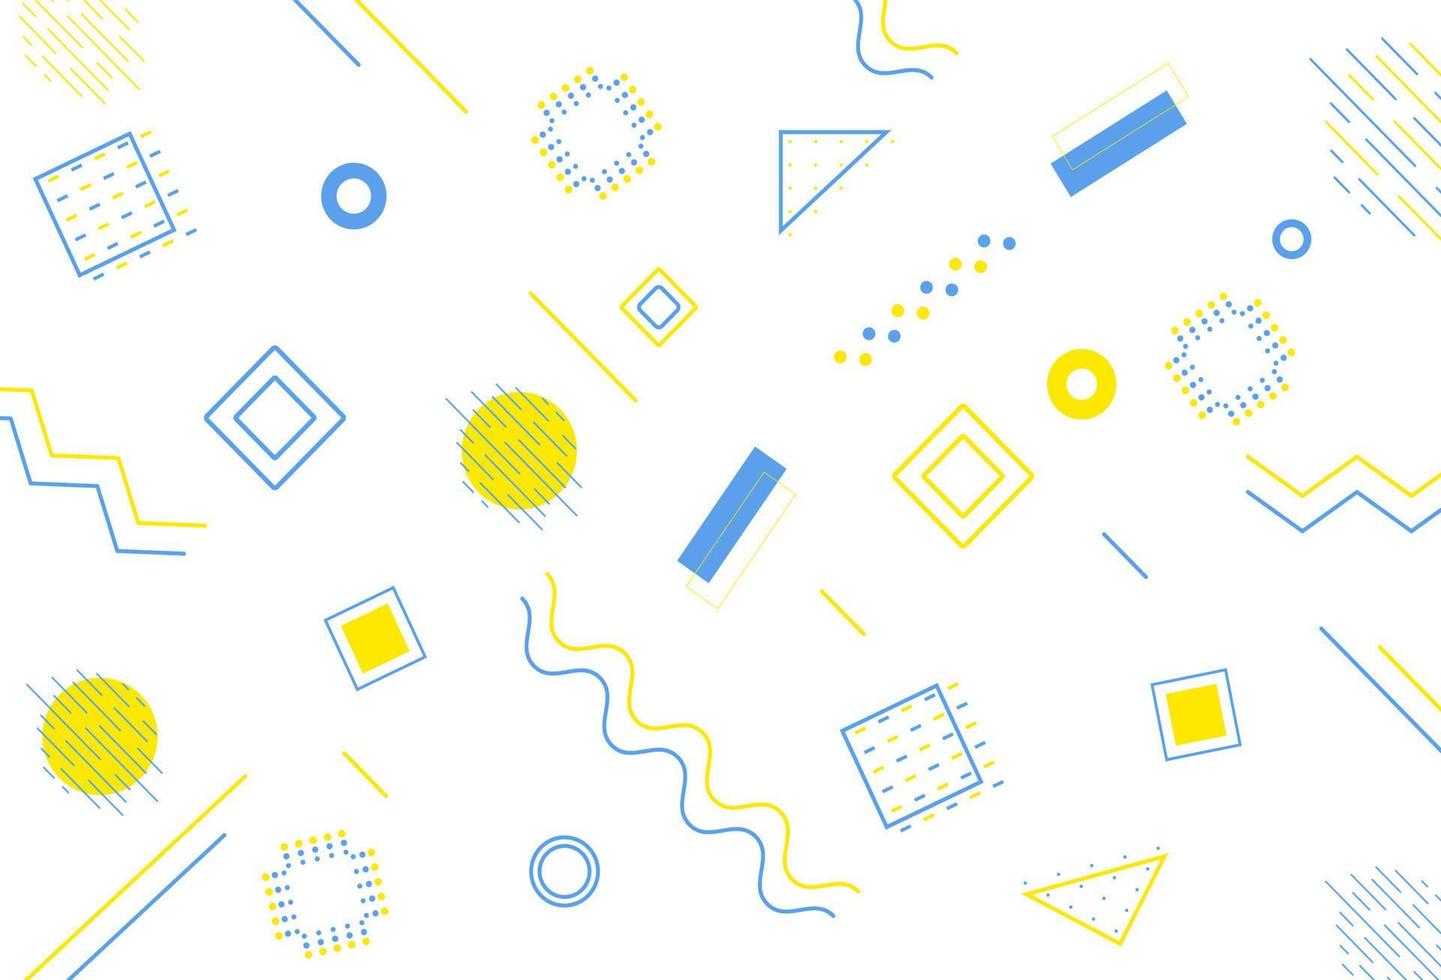 conjunto de elementos de design de memphis. vetor linhas geométricas abstratas com tons de azul e amarelo.